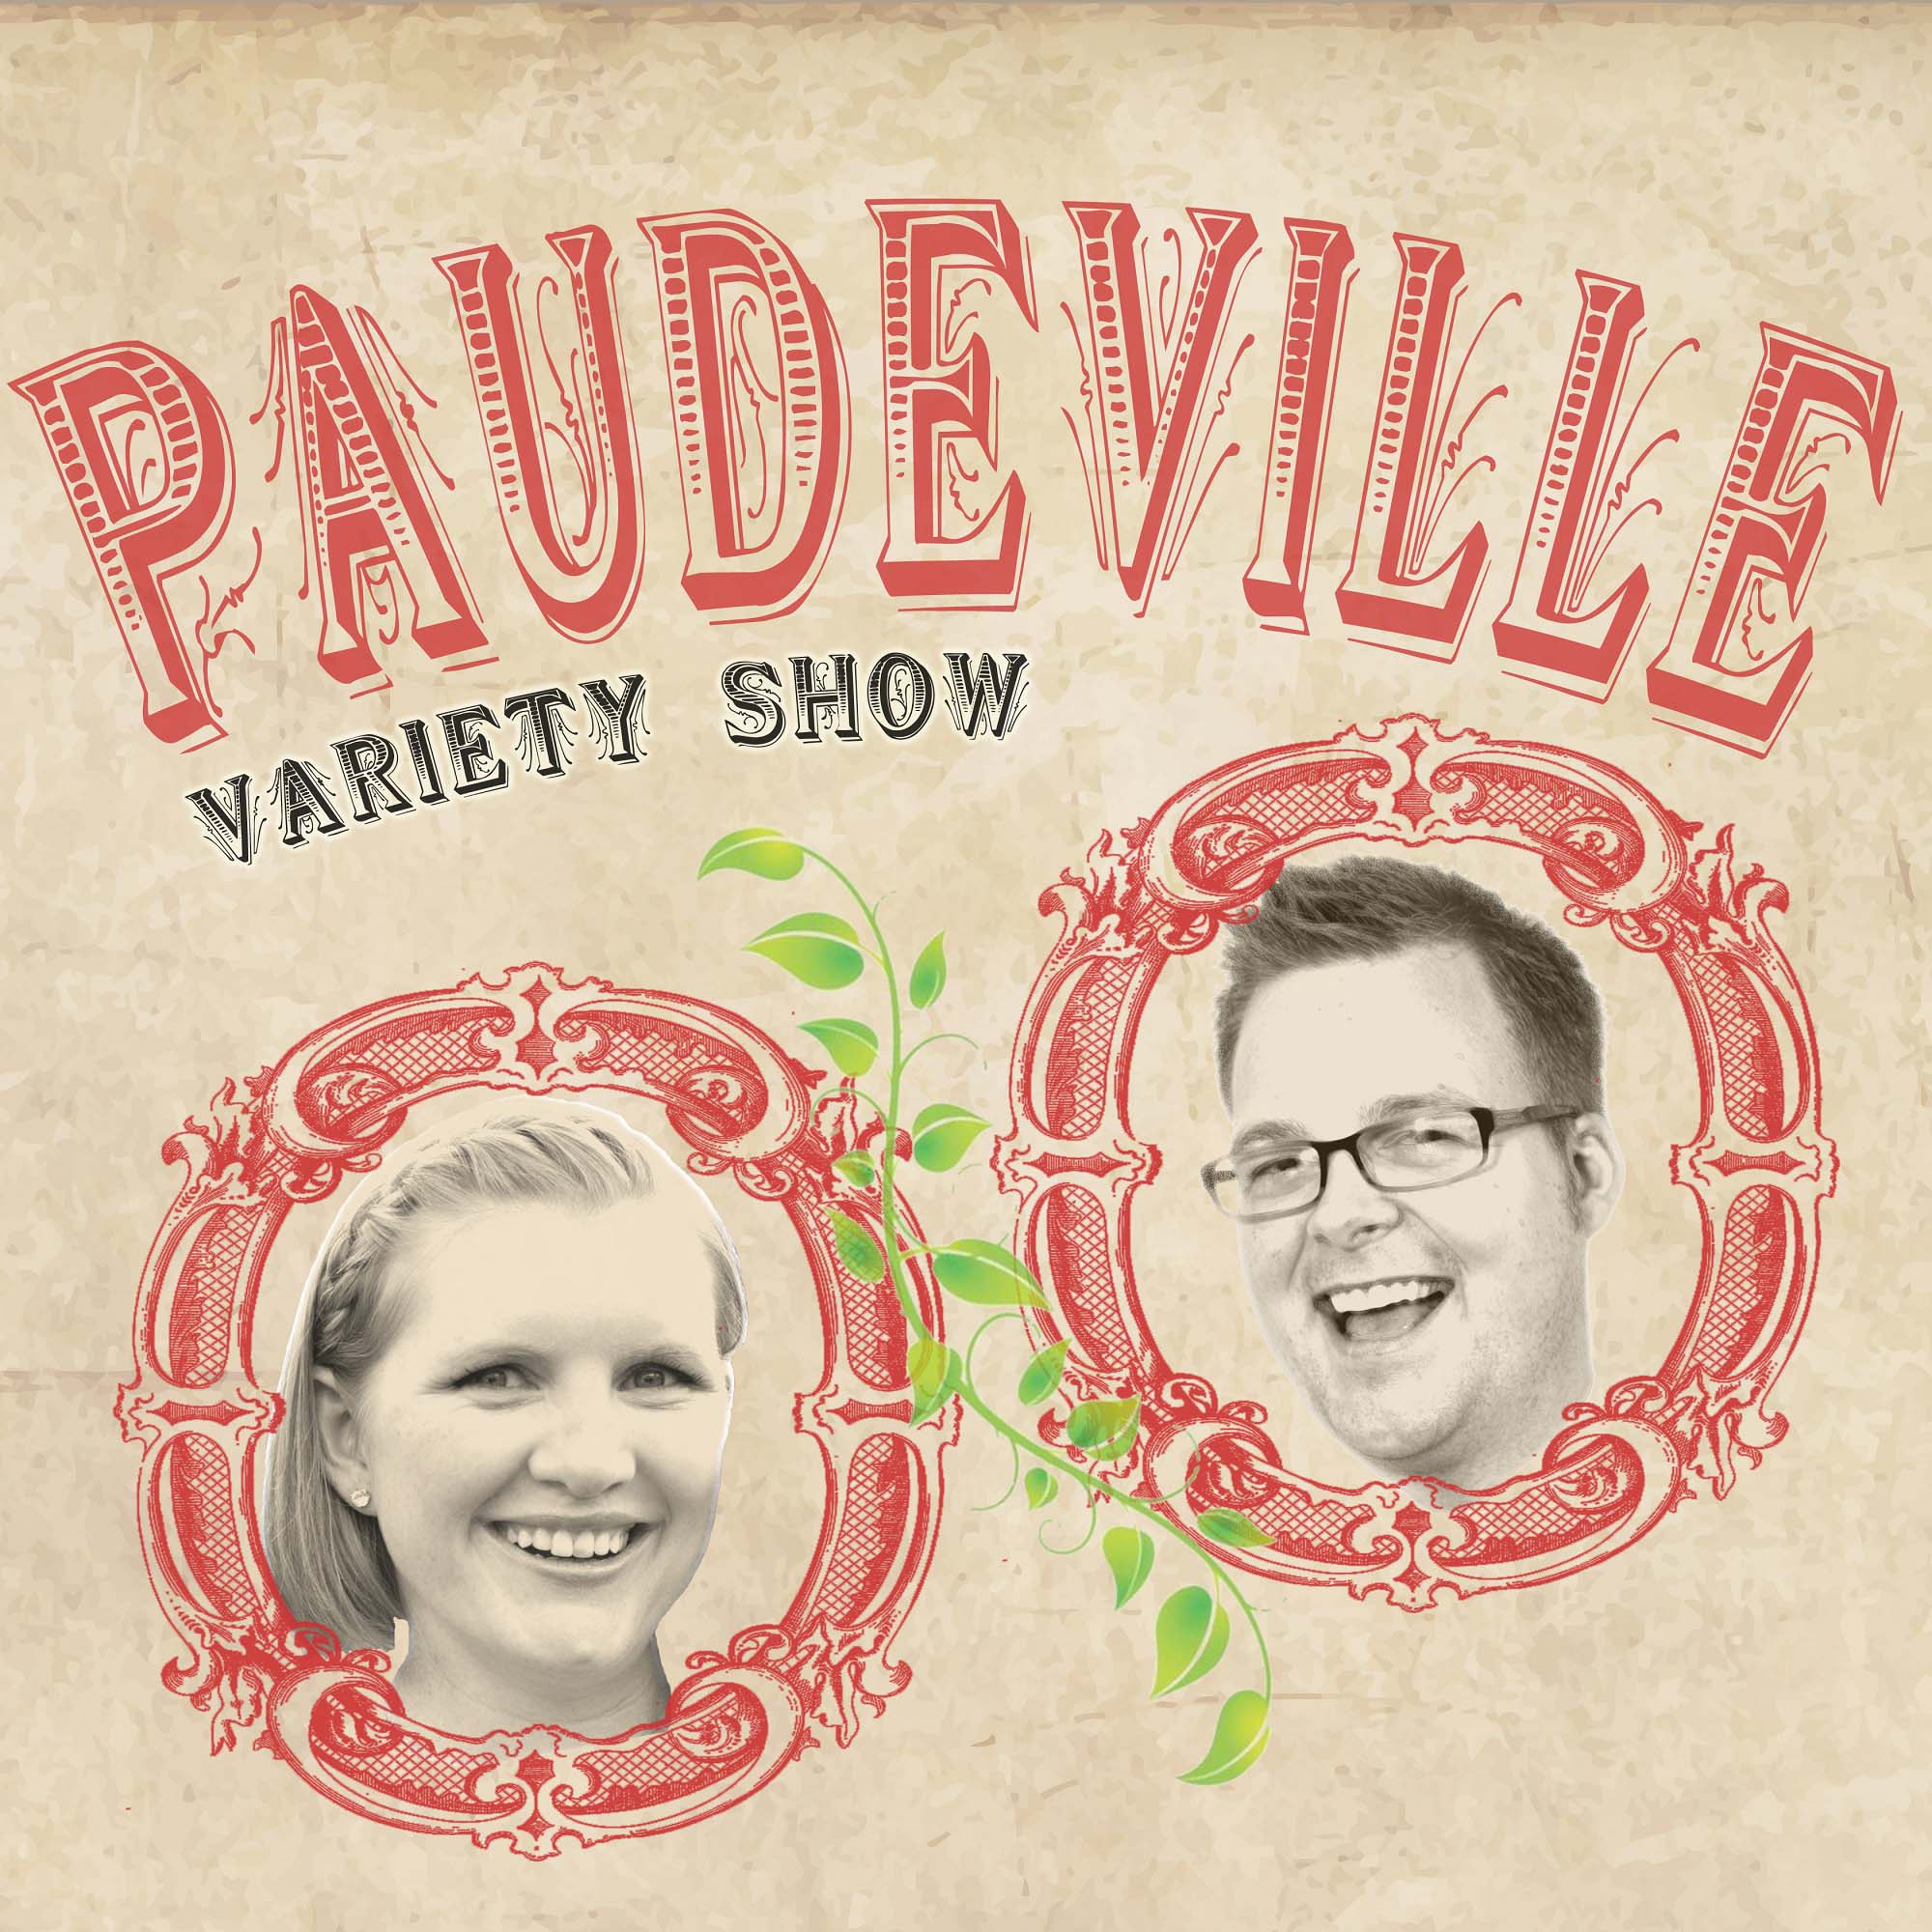 Paudeville podcast show image